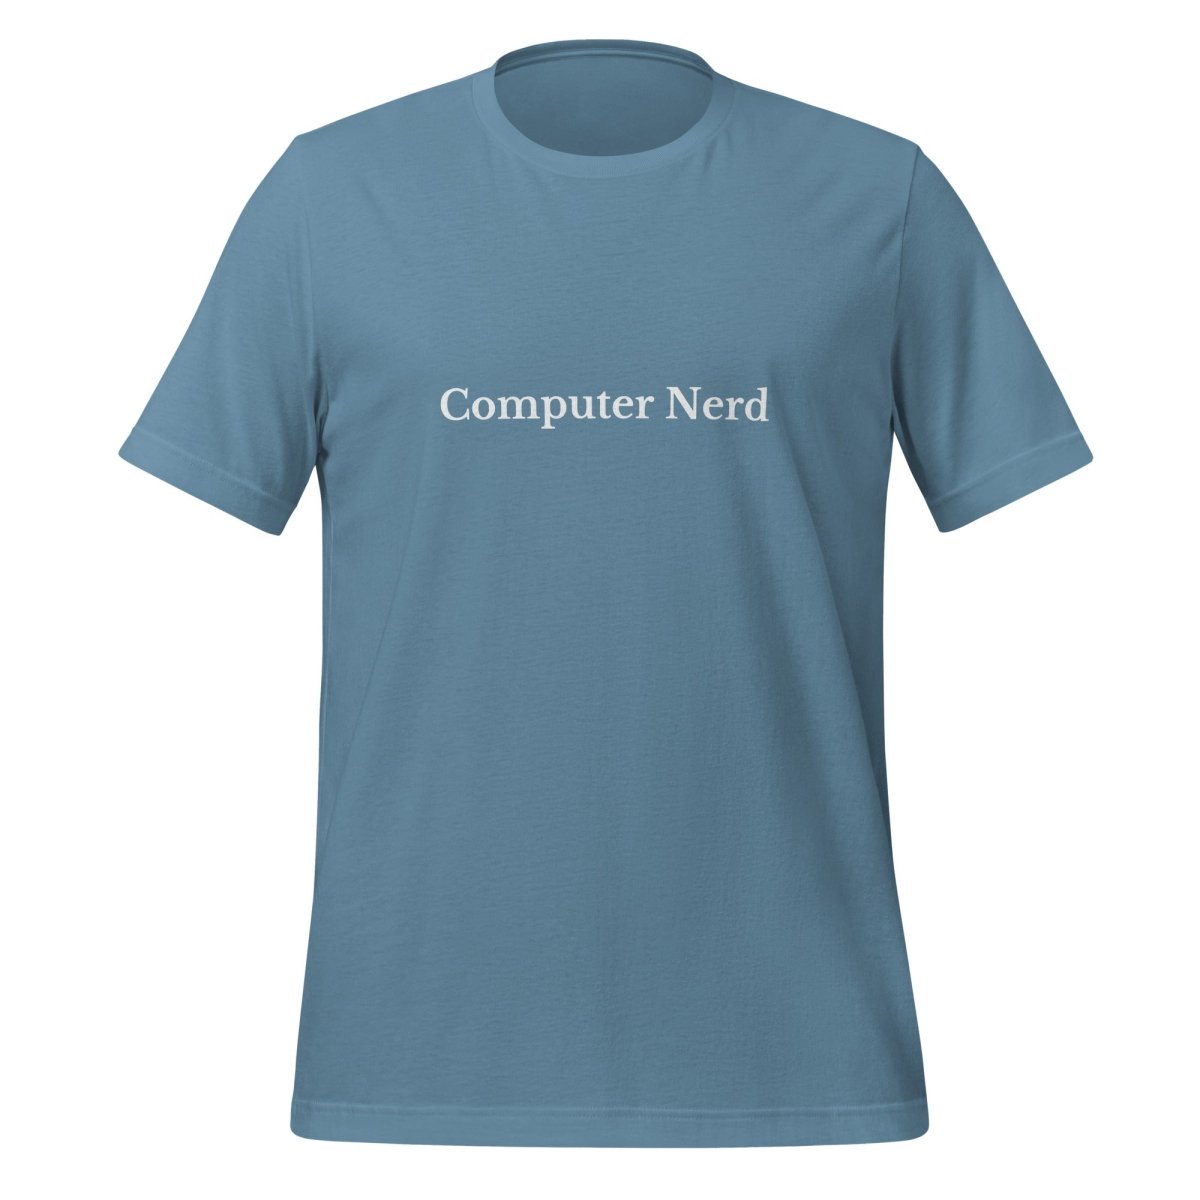 Computer Nerd T - Shirt (unisex) - Steel Blue - AI Store